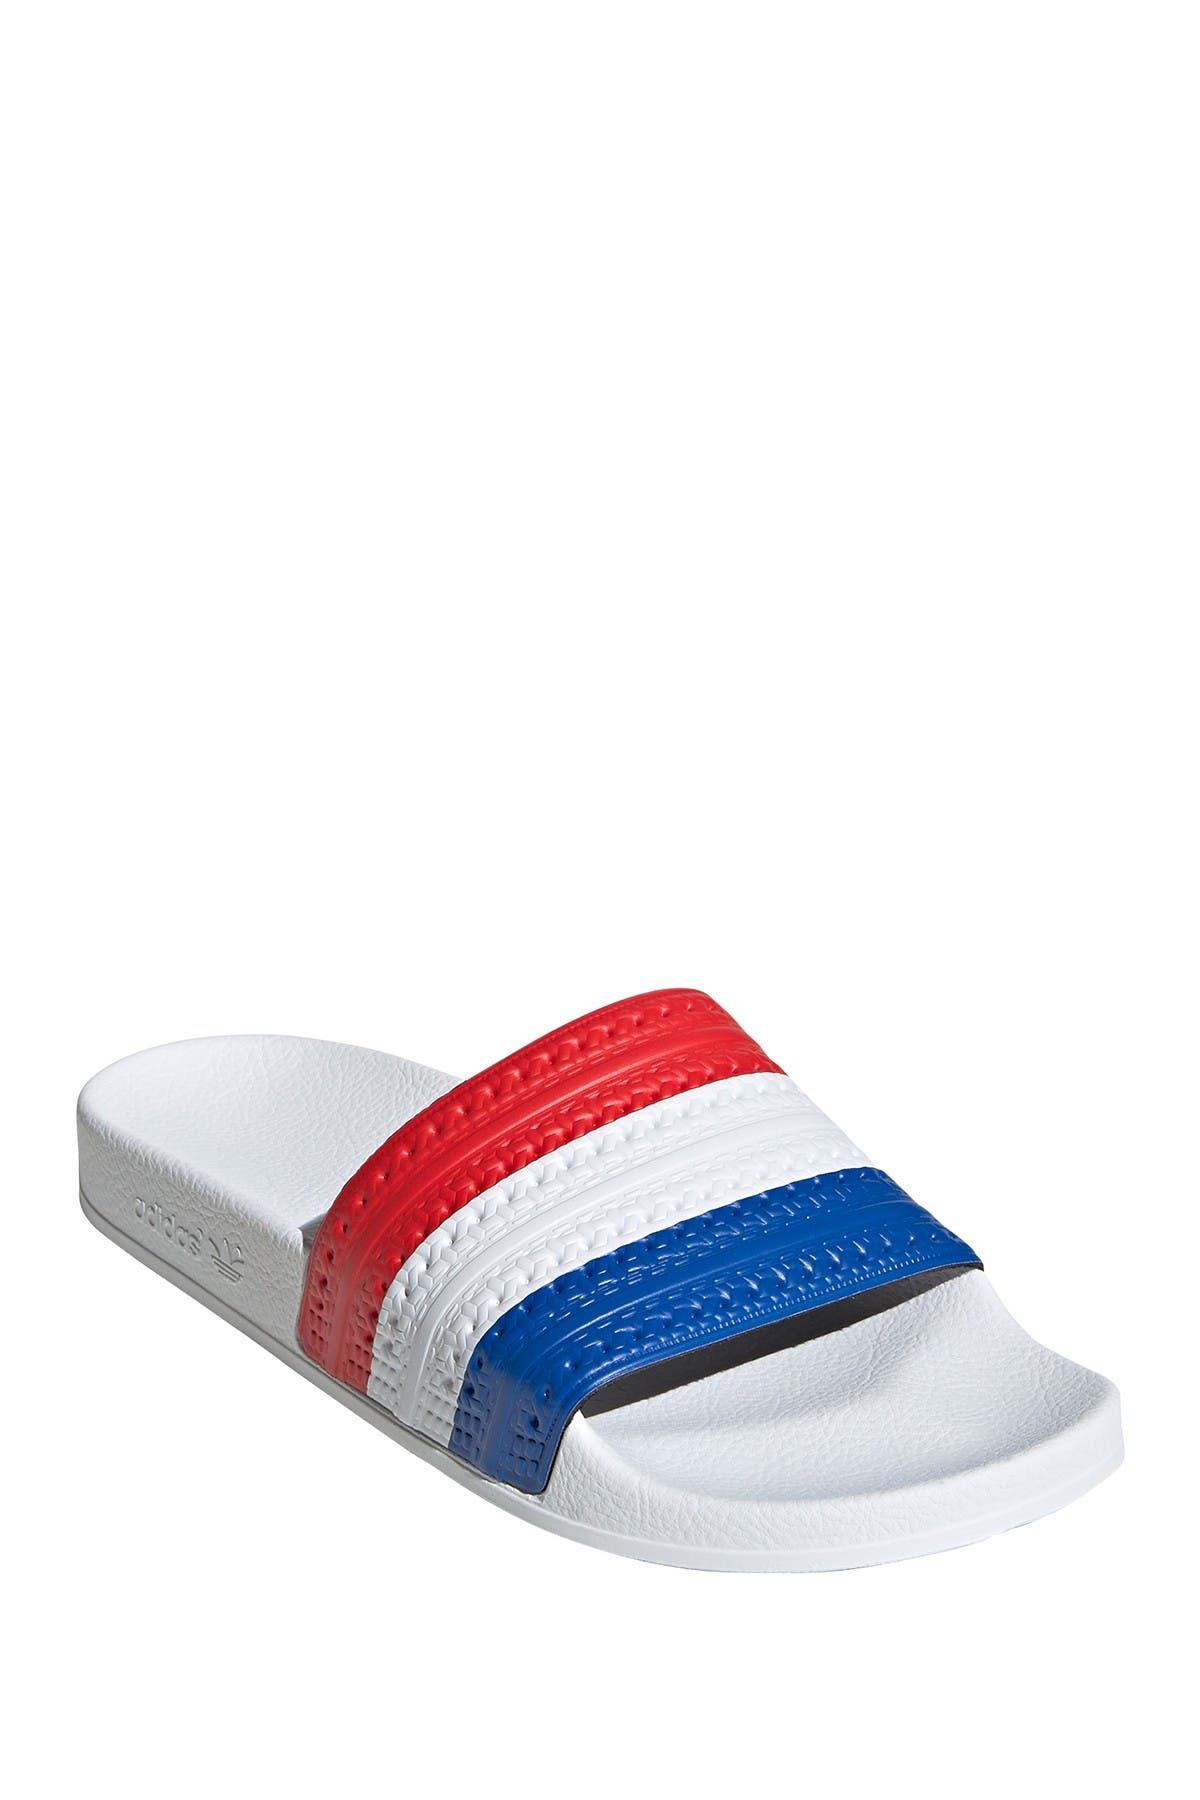 adidas adilette slide sandal